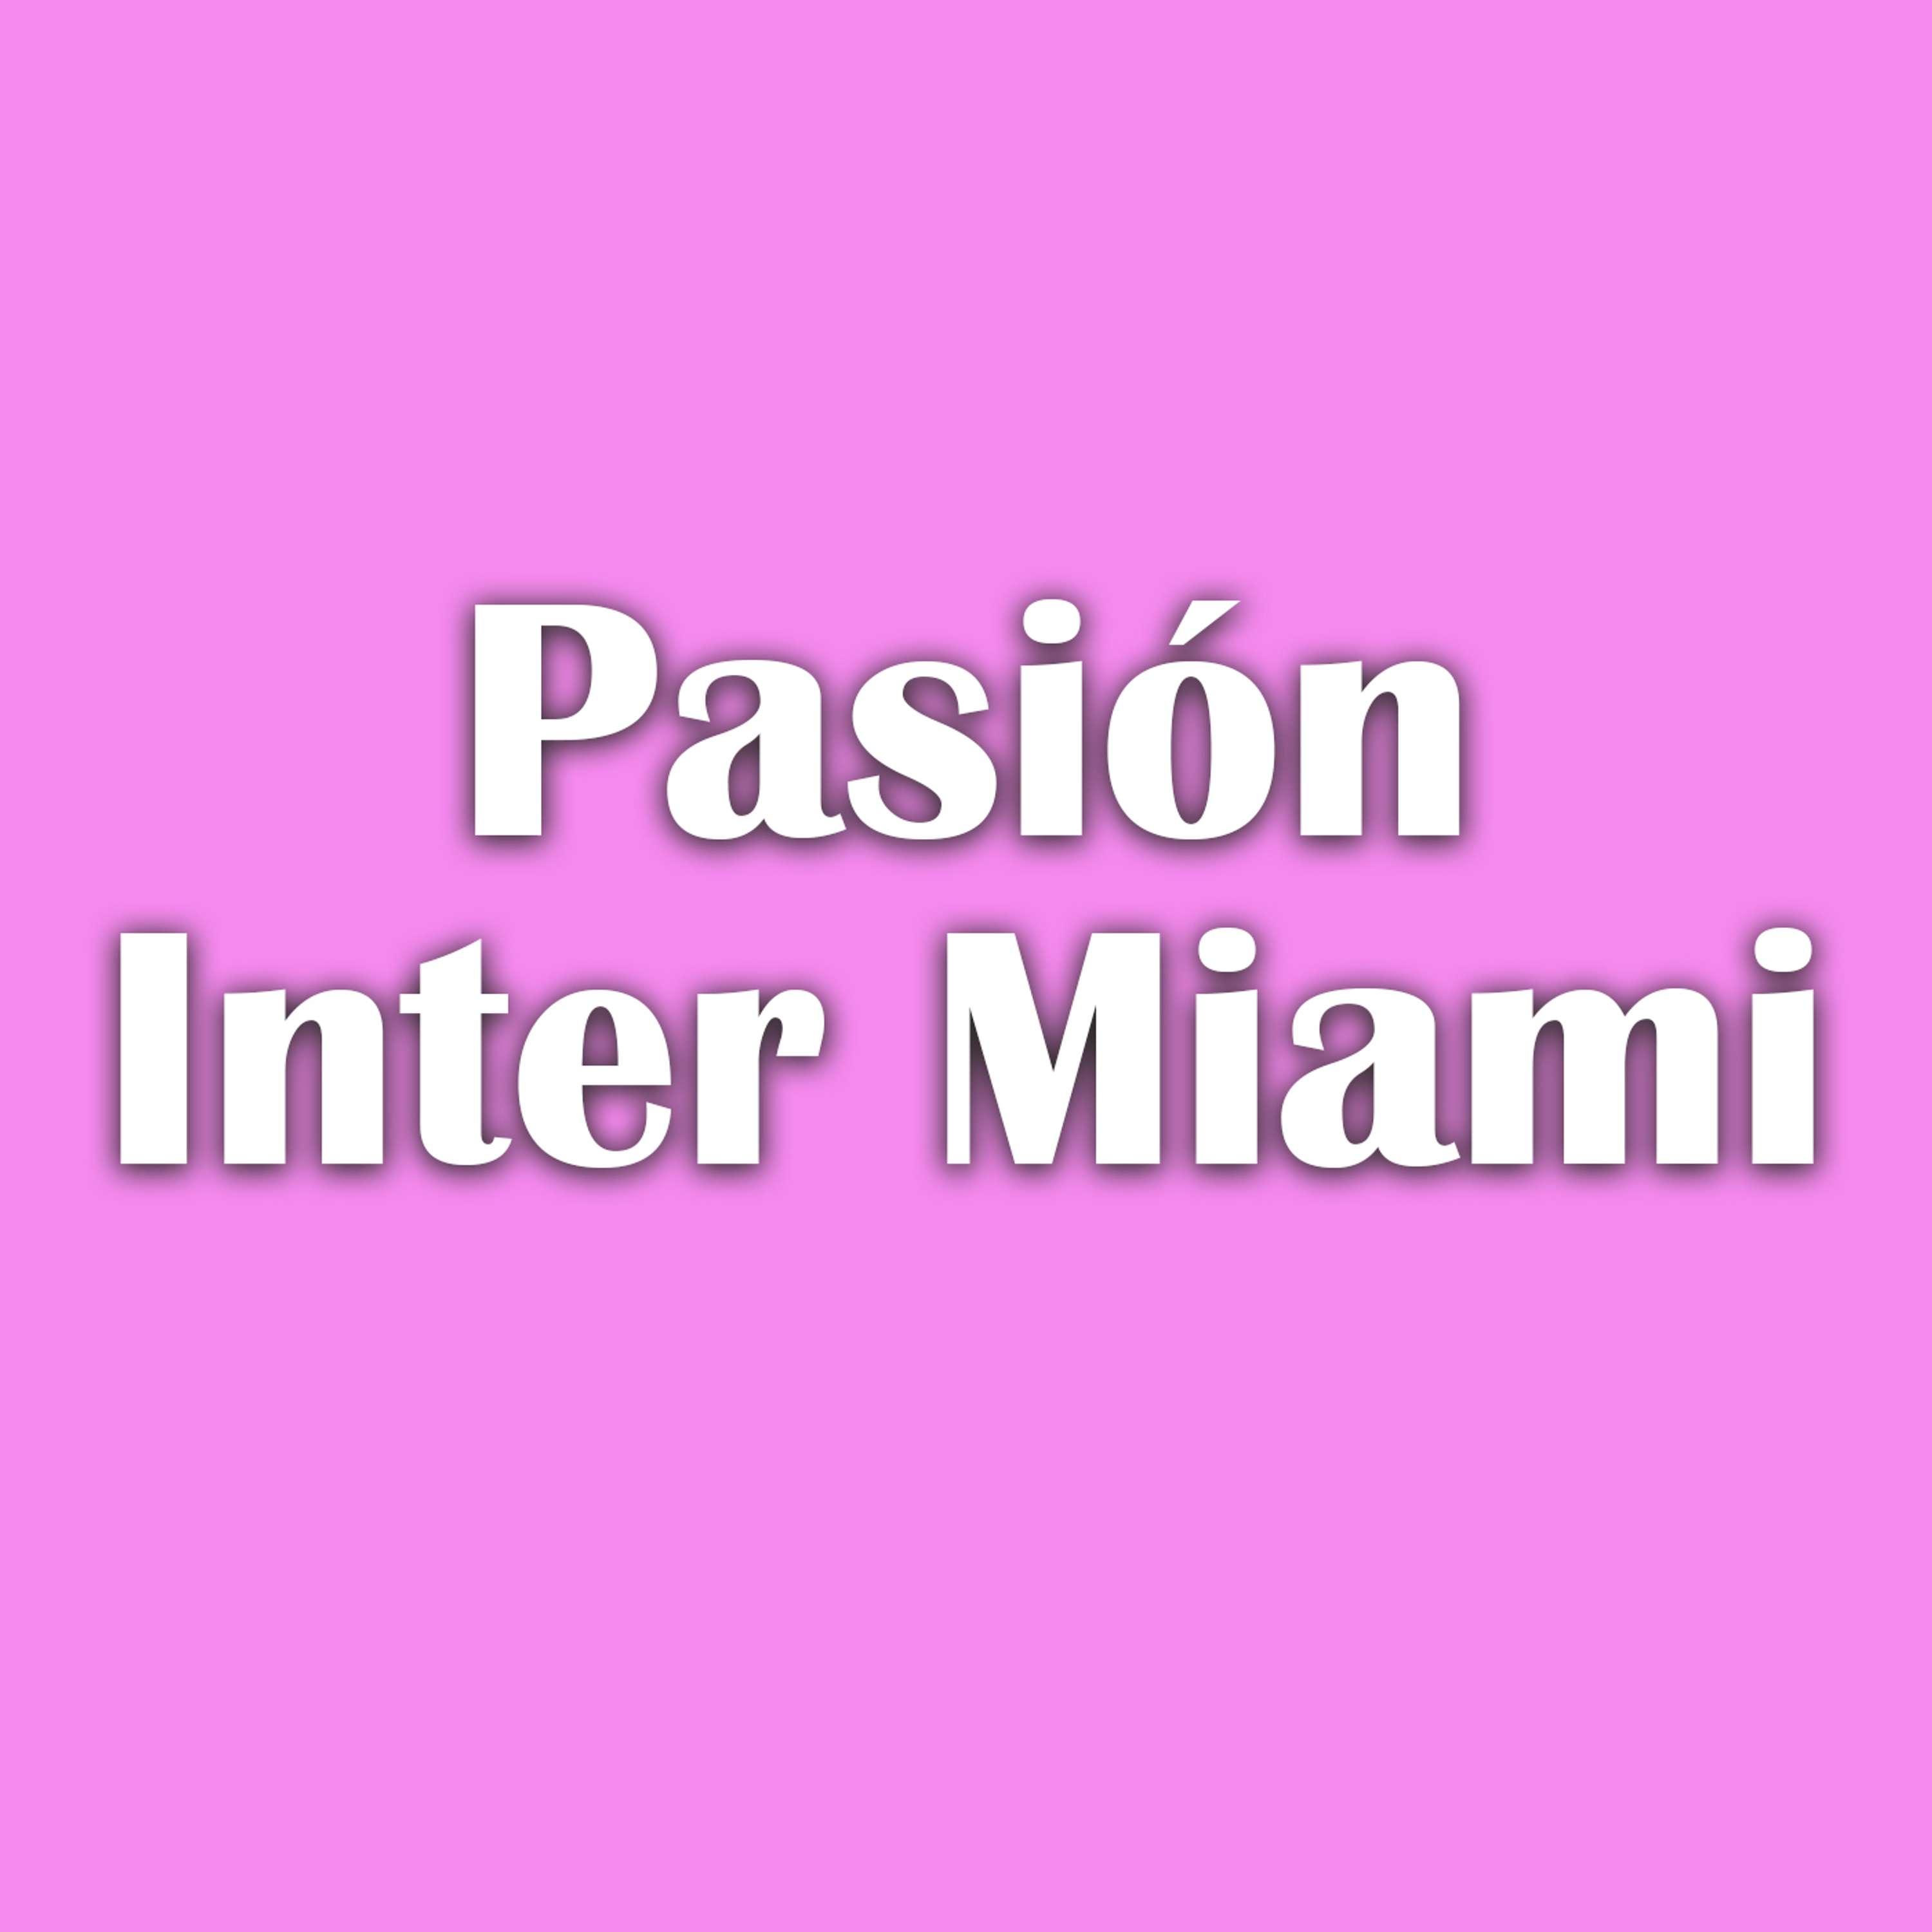 Arrancando de cero: Debut histórico en Los Ángeles | Pasión Inter Miami EP 1